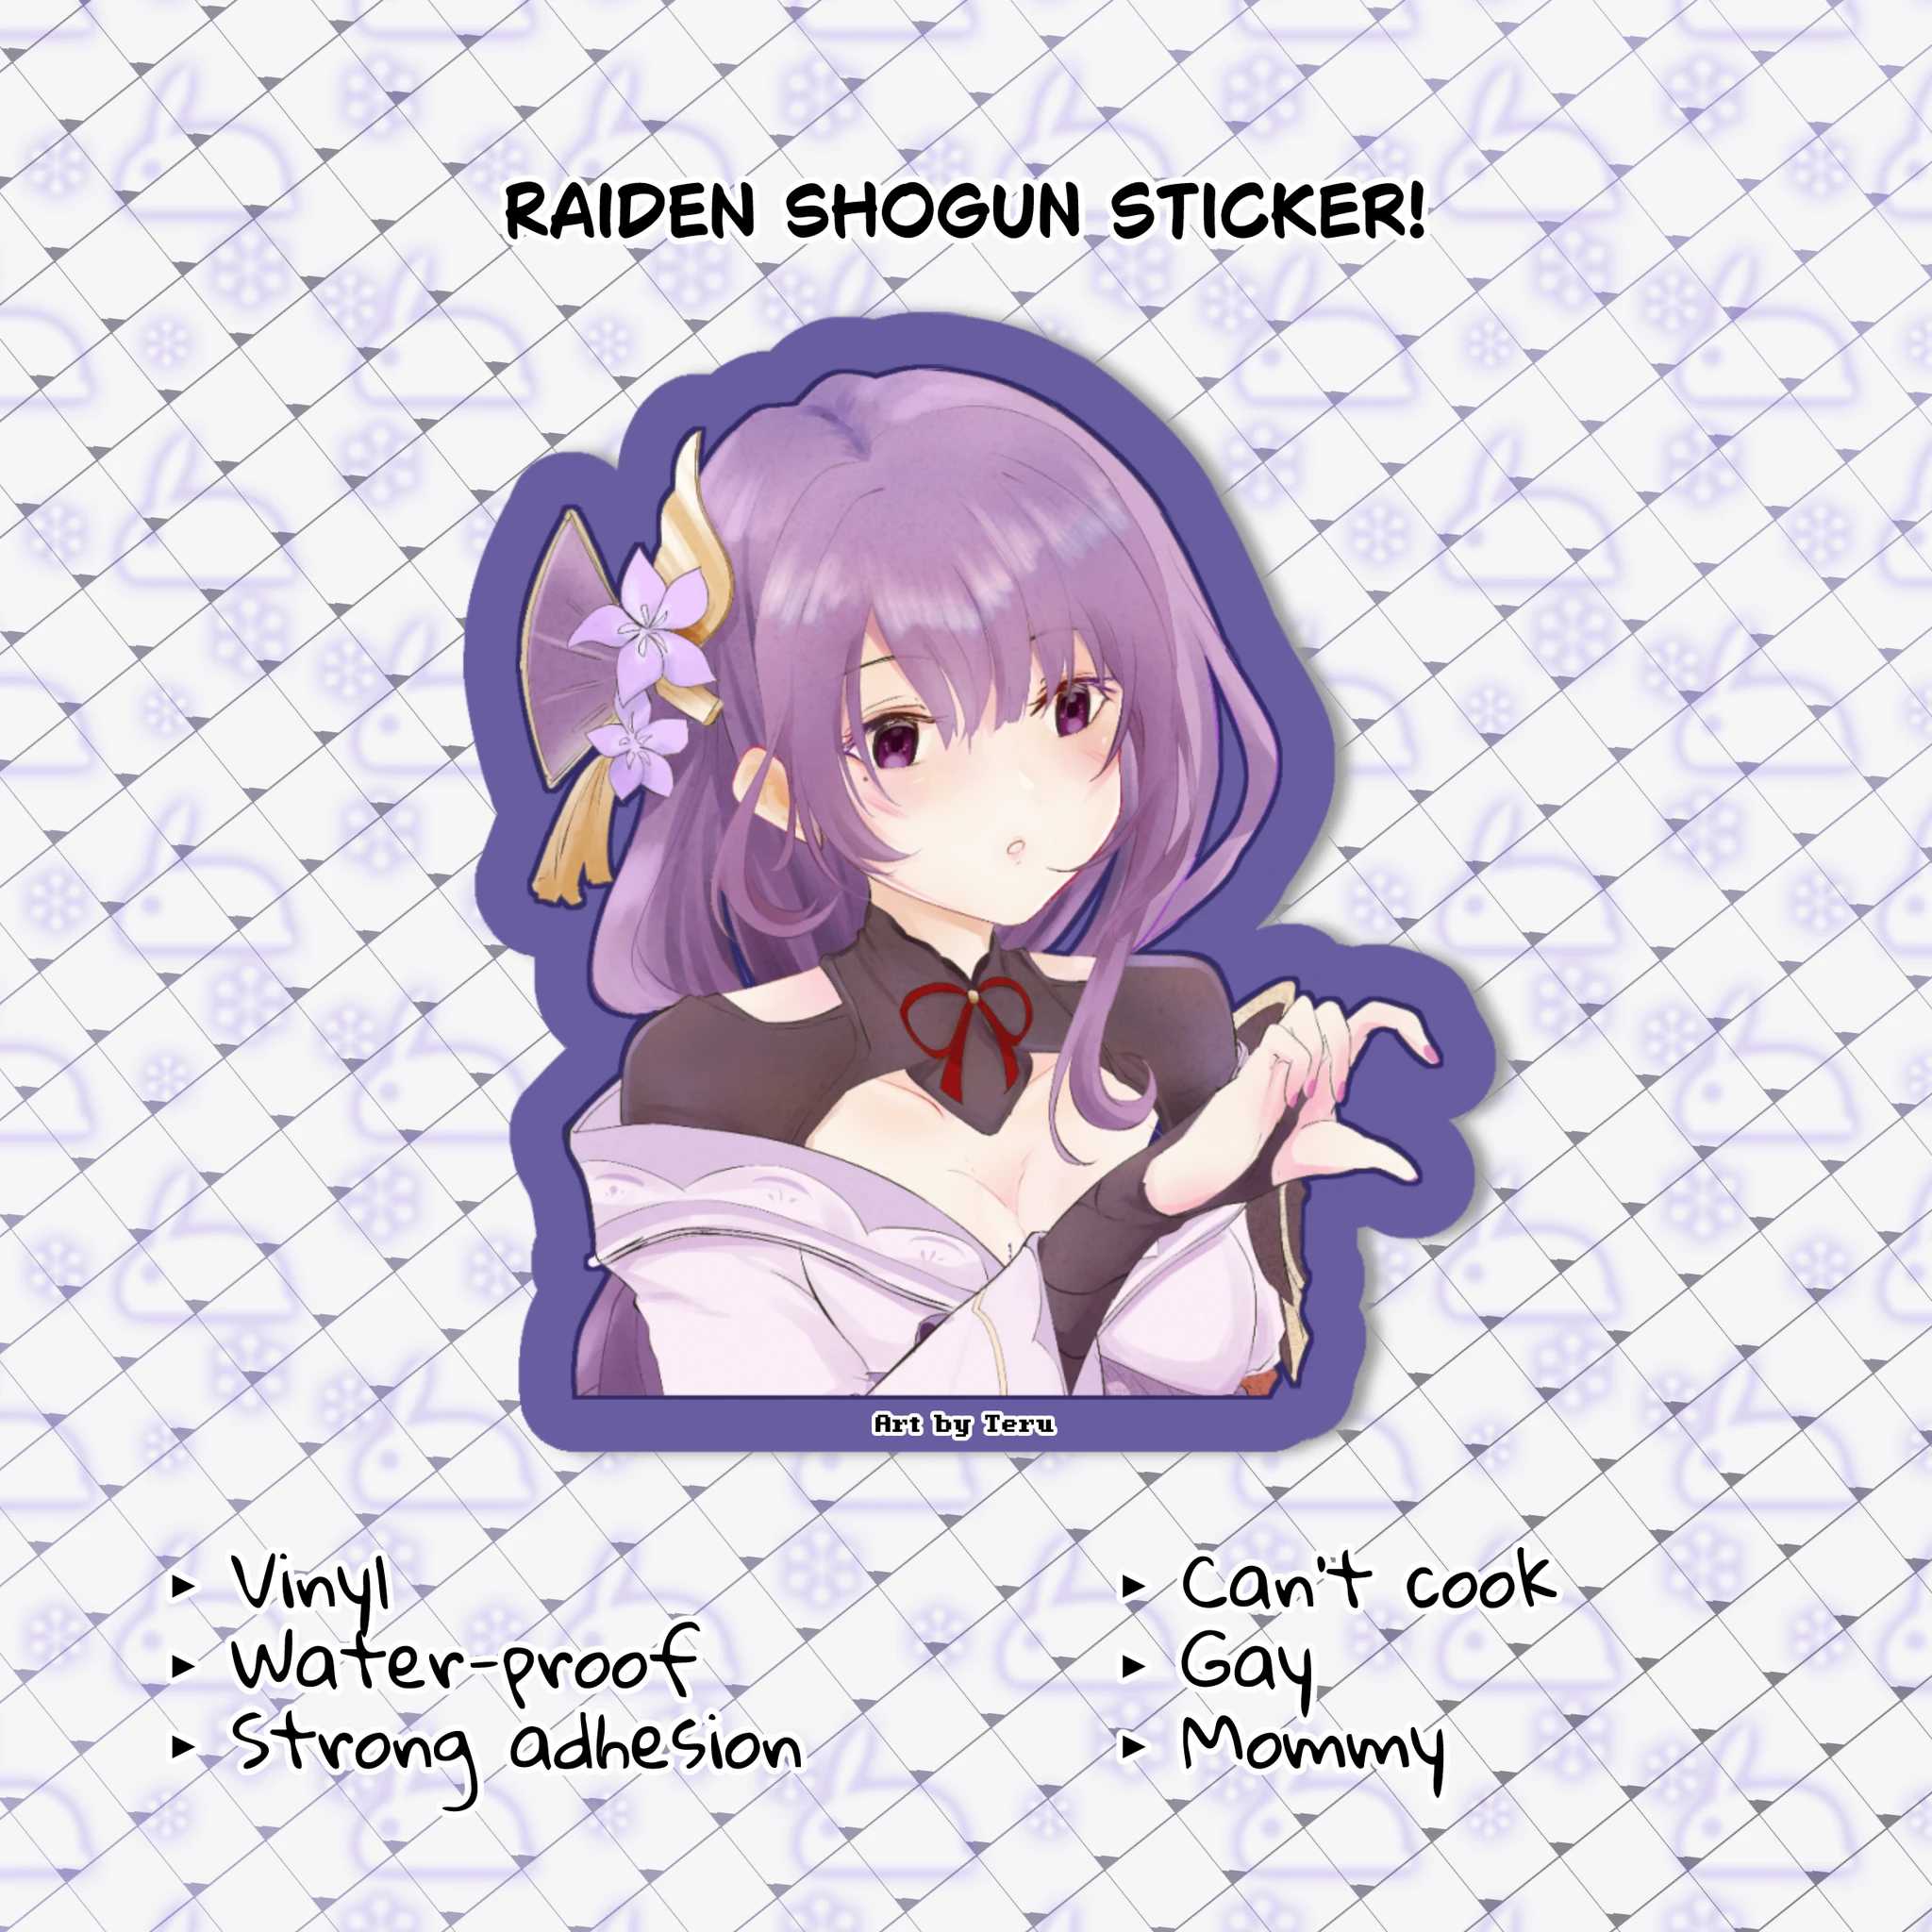 Sticker - Genshin Impact Yae Miko/Raiden Shogun